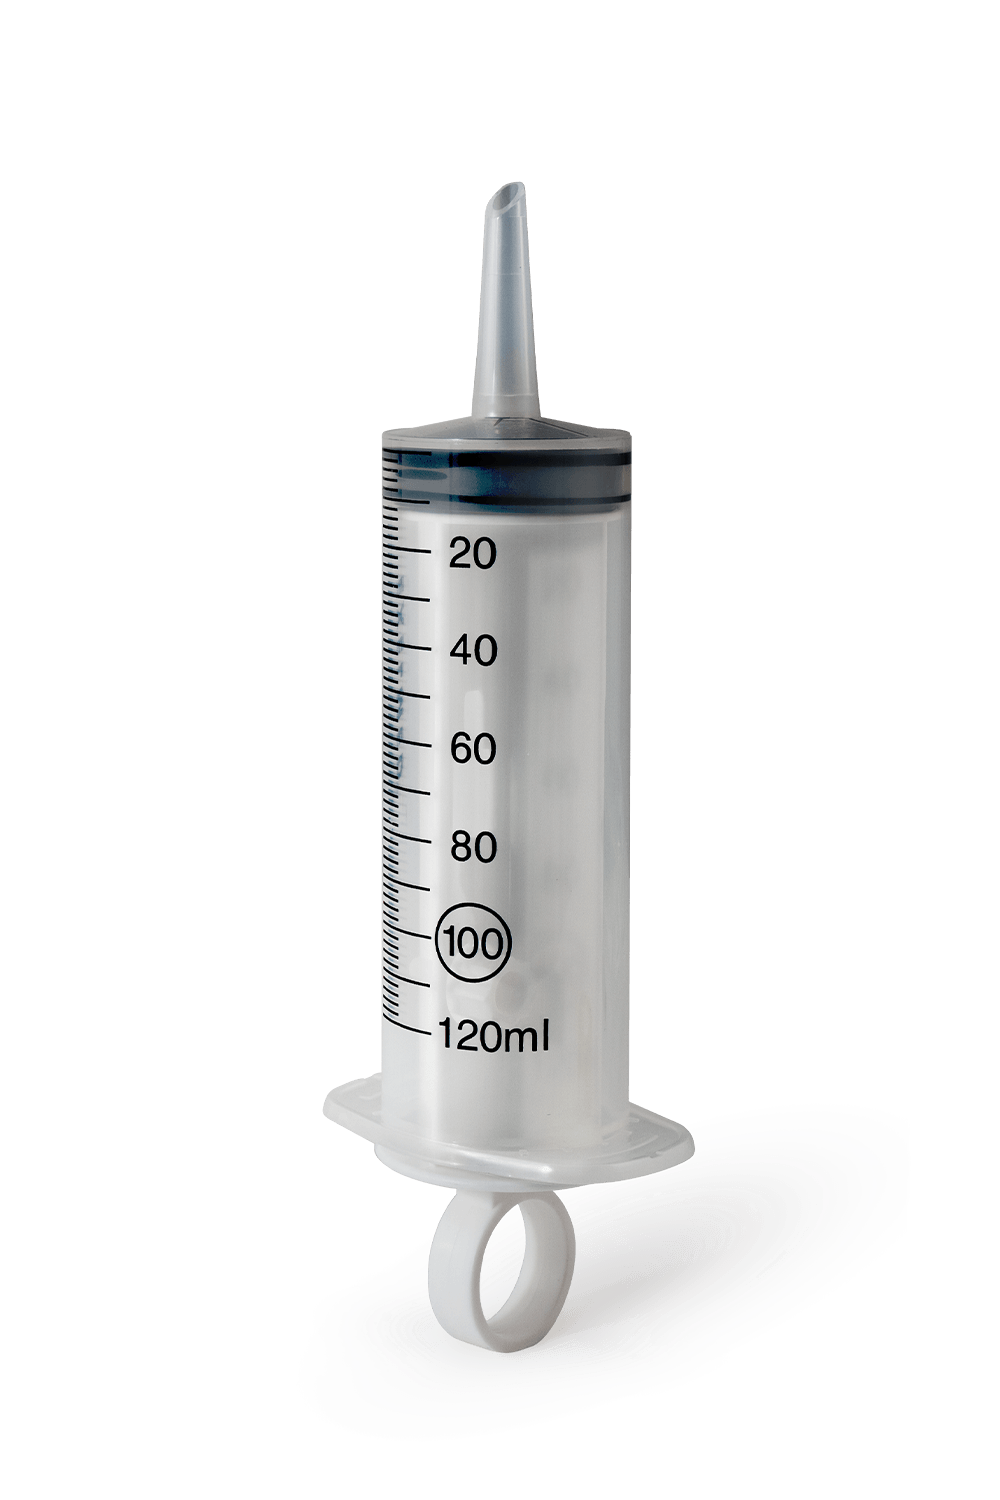 Transparent syringe with eccentric Luer cone.